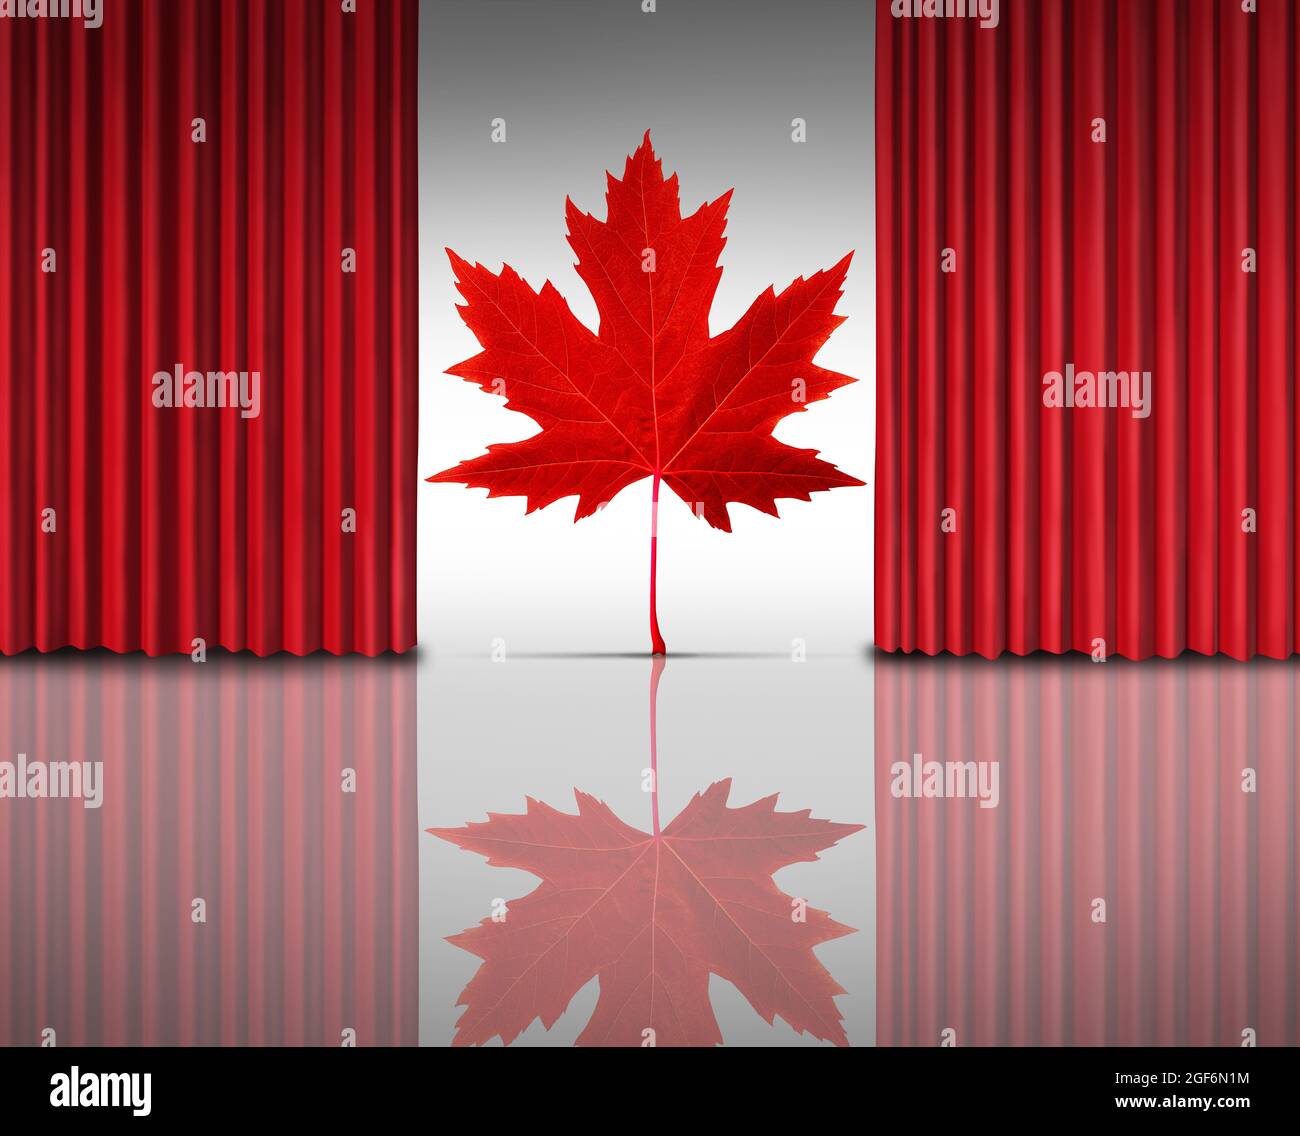 Kanadischer Unterhaltungshintergrund für kanadische Kinokunst mit offenen roten Samtvorhängen oder Vorhängen, die ein rotes Ahornblatt offenbaren. Stockfoto